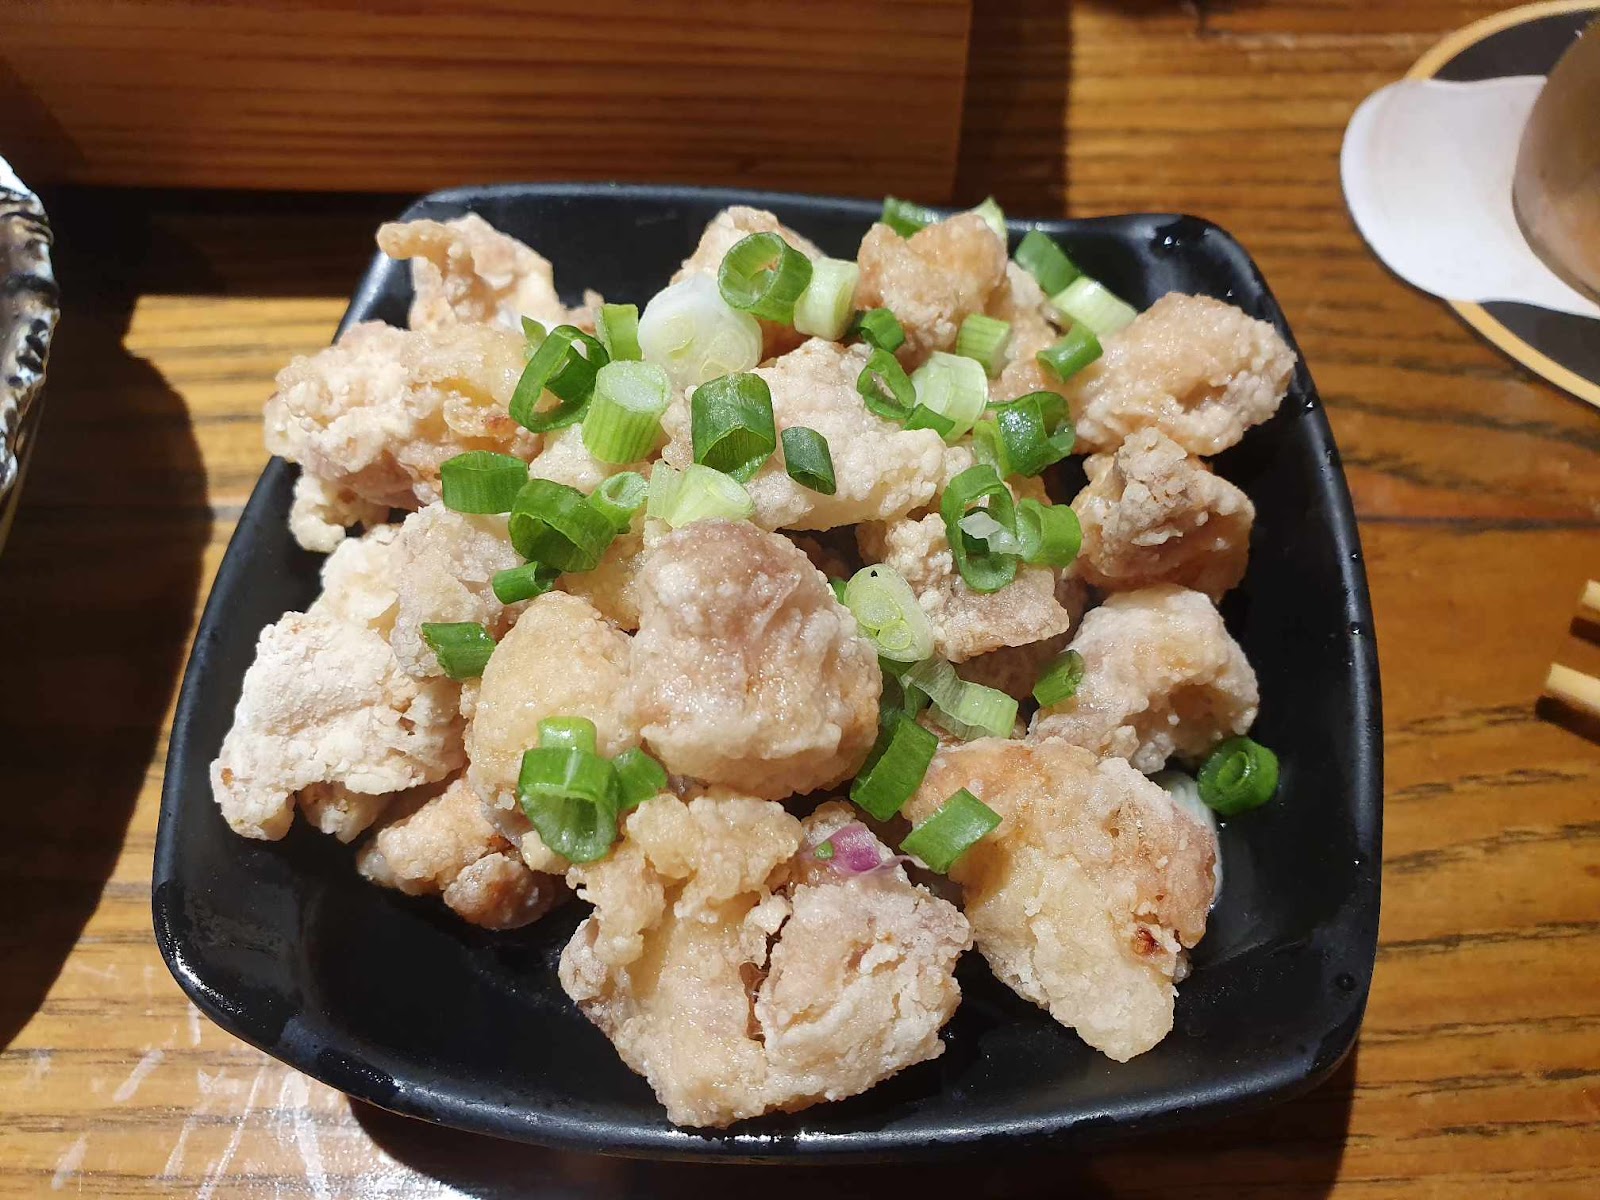 Shugetsu golden brown crispy chicken cartilage